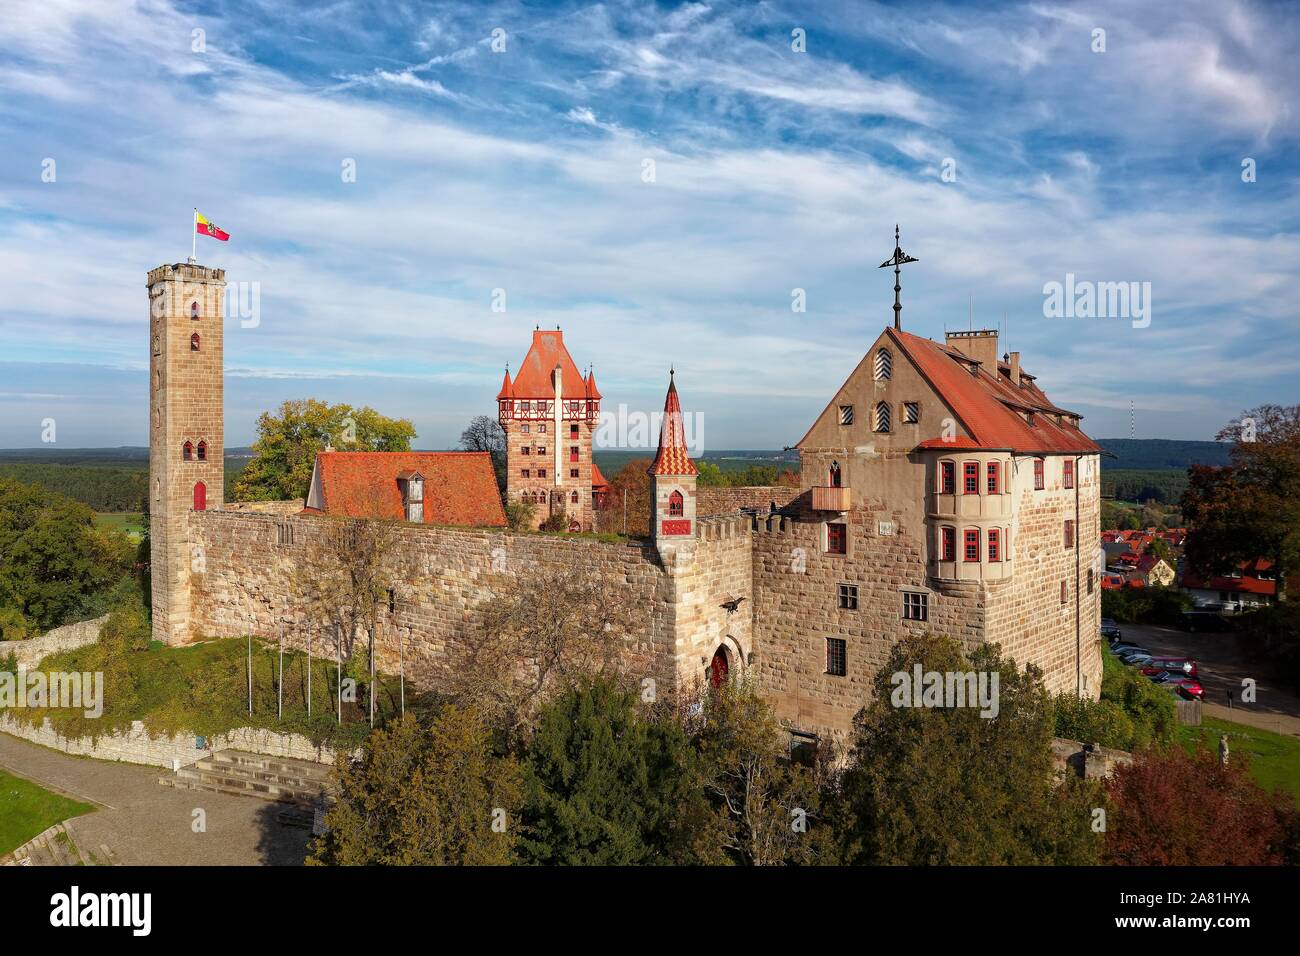 Il castello di Abenberg, High Castle, Abenberg, Franconia Lake District, Media Franconia, strada del castello, Franconia, Baviera, Germania Foto Stock